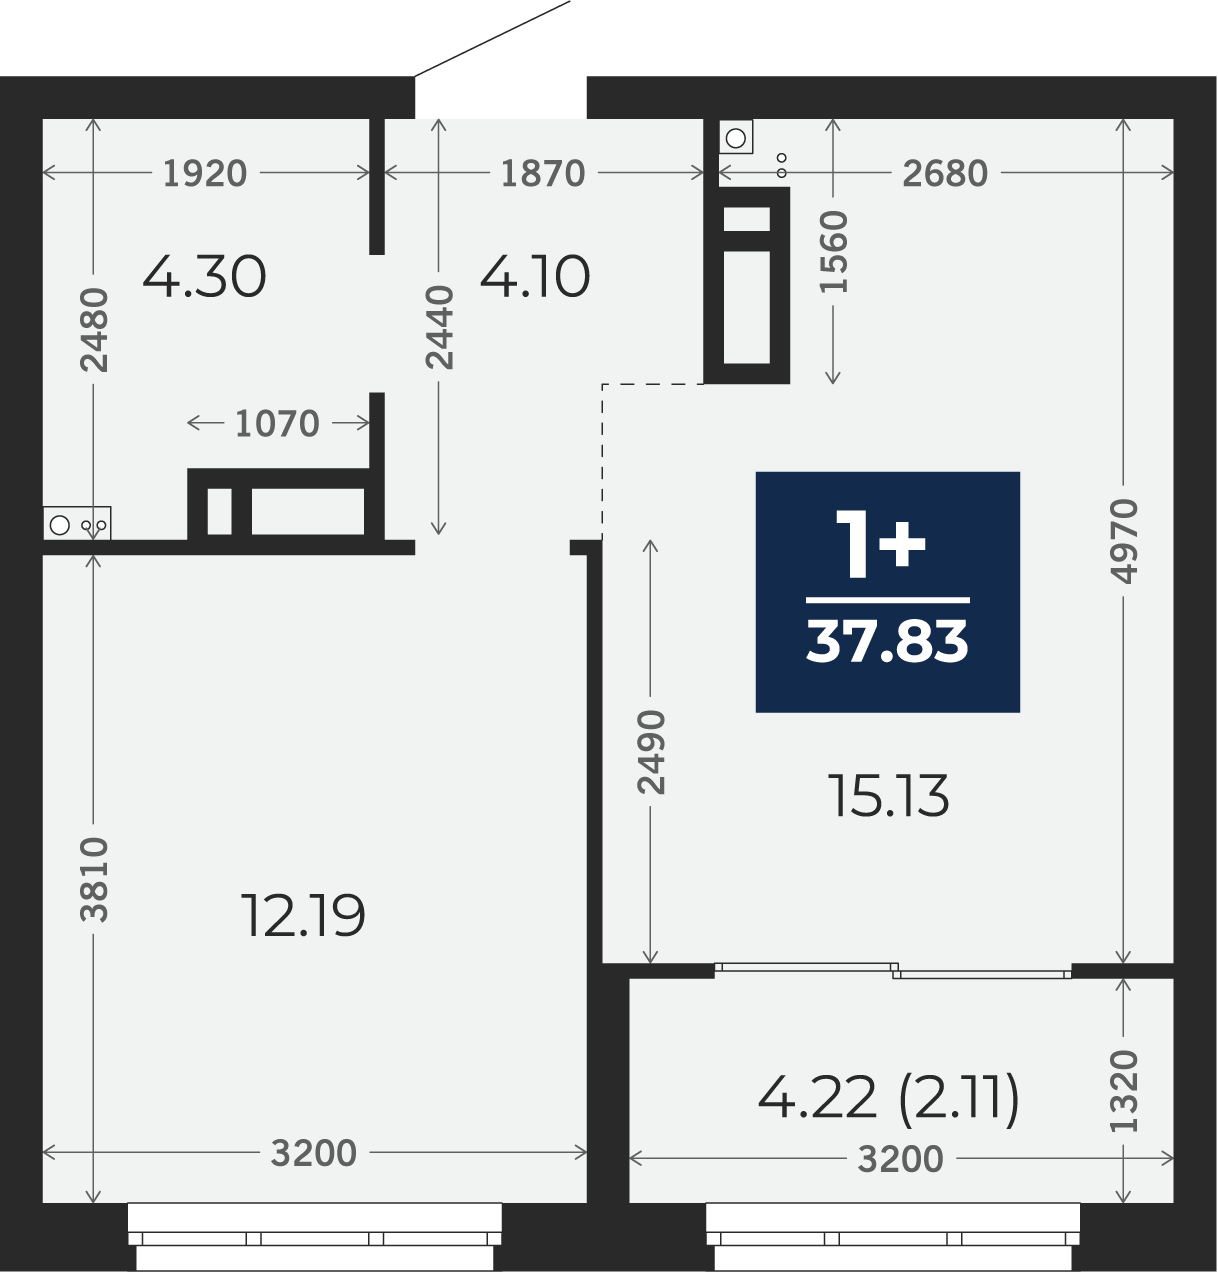 Квартира № 241, 1-комнатная, 37.83 кв. м, 6 этаж